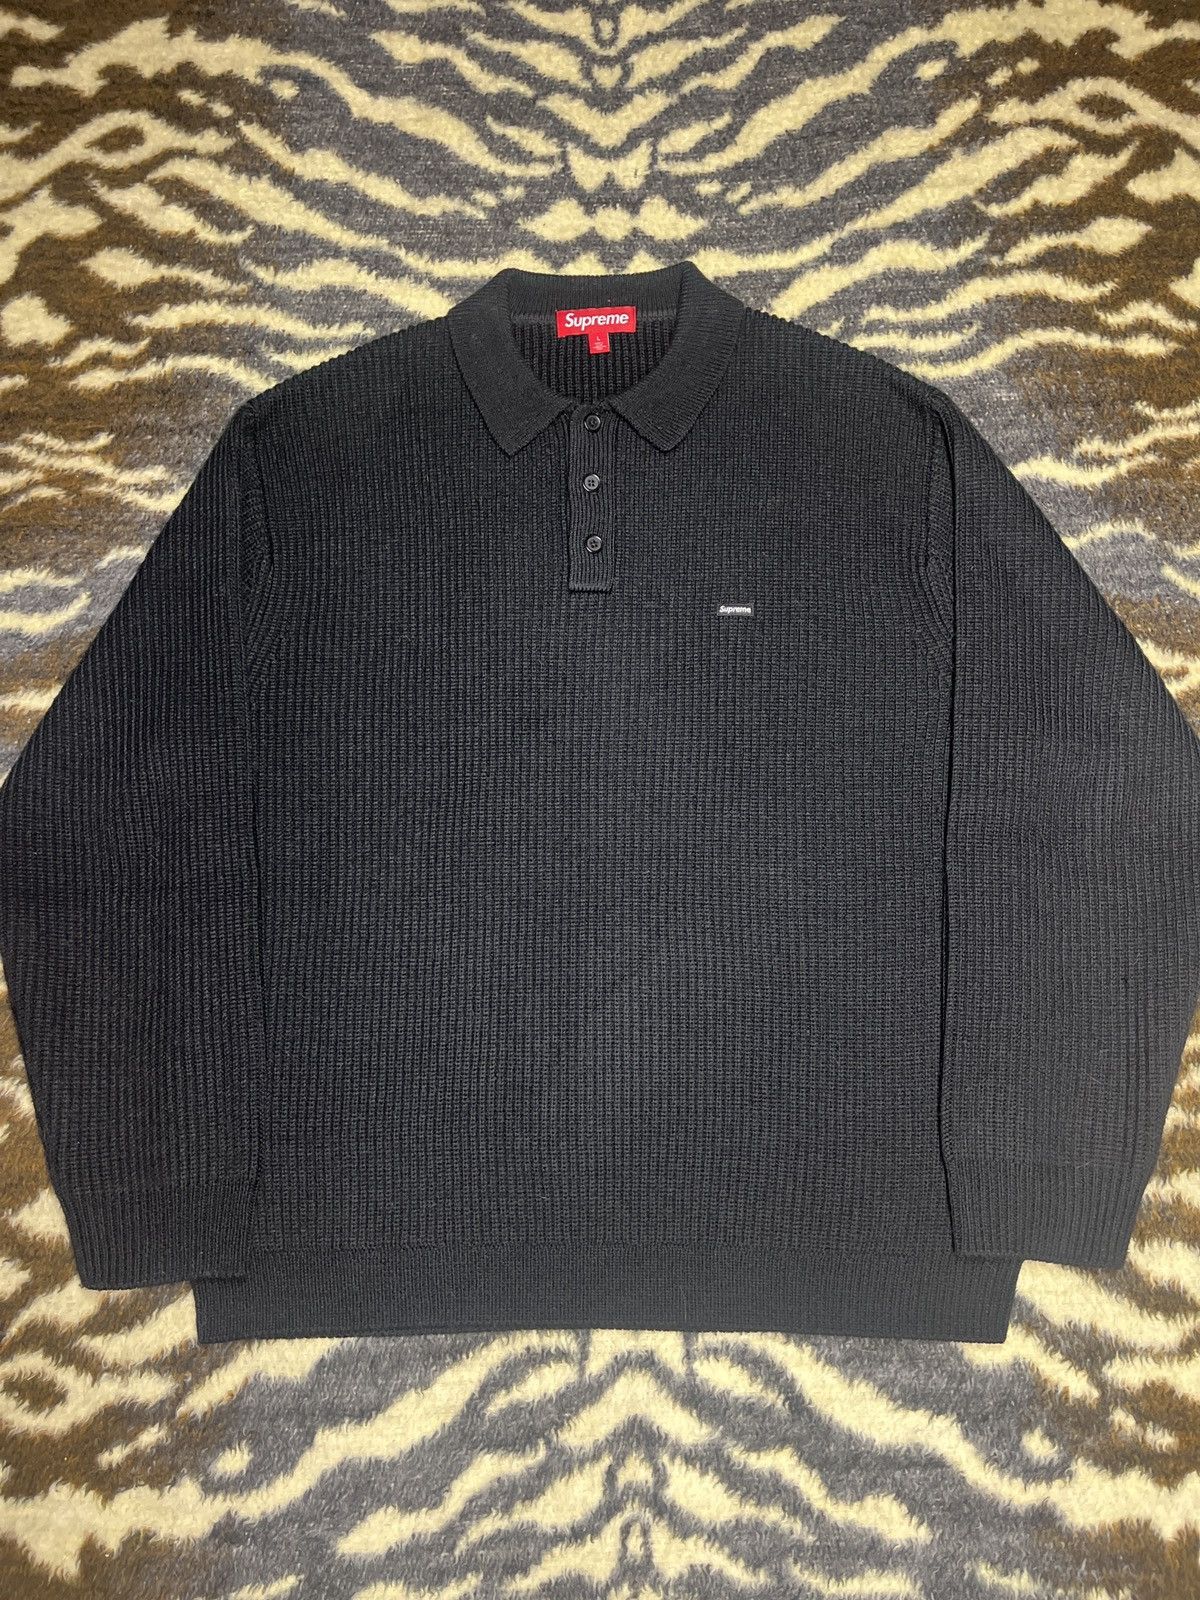 Supreme Supreme Small Box logo Collared Sweater | Grailed